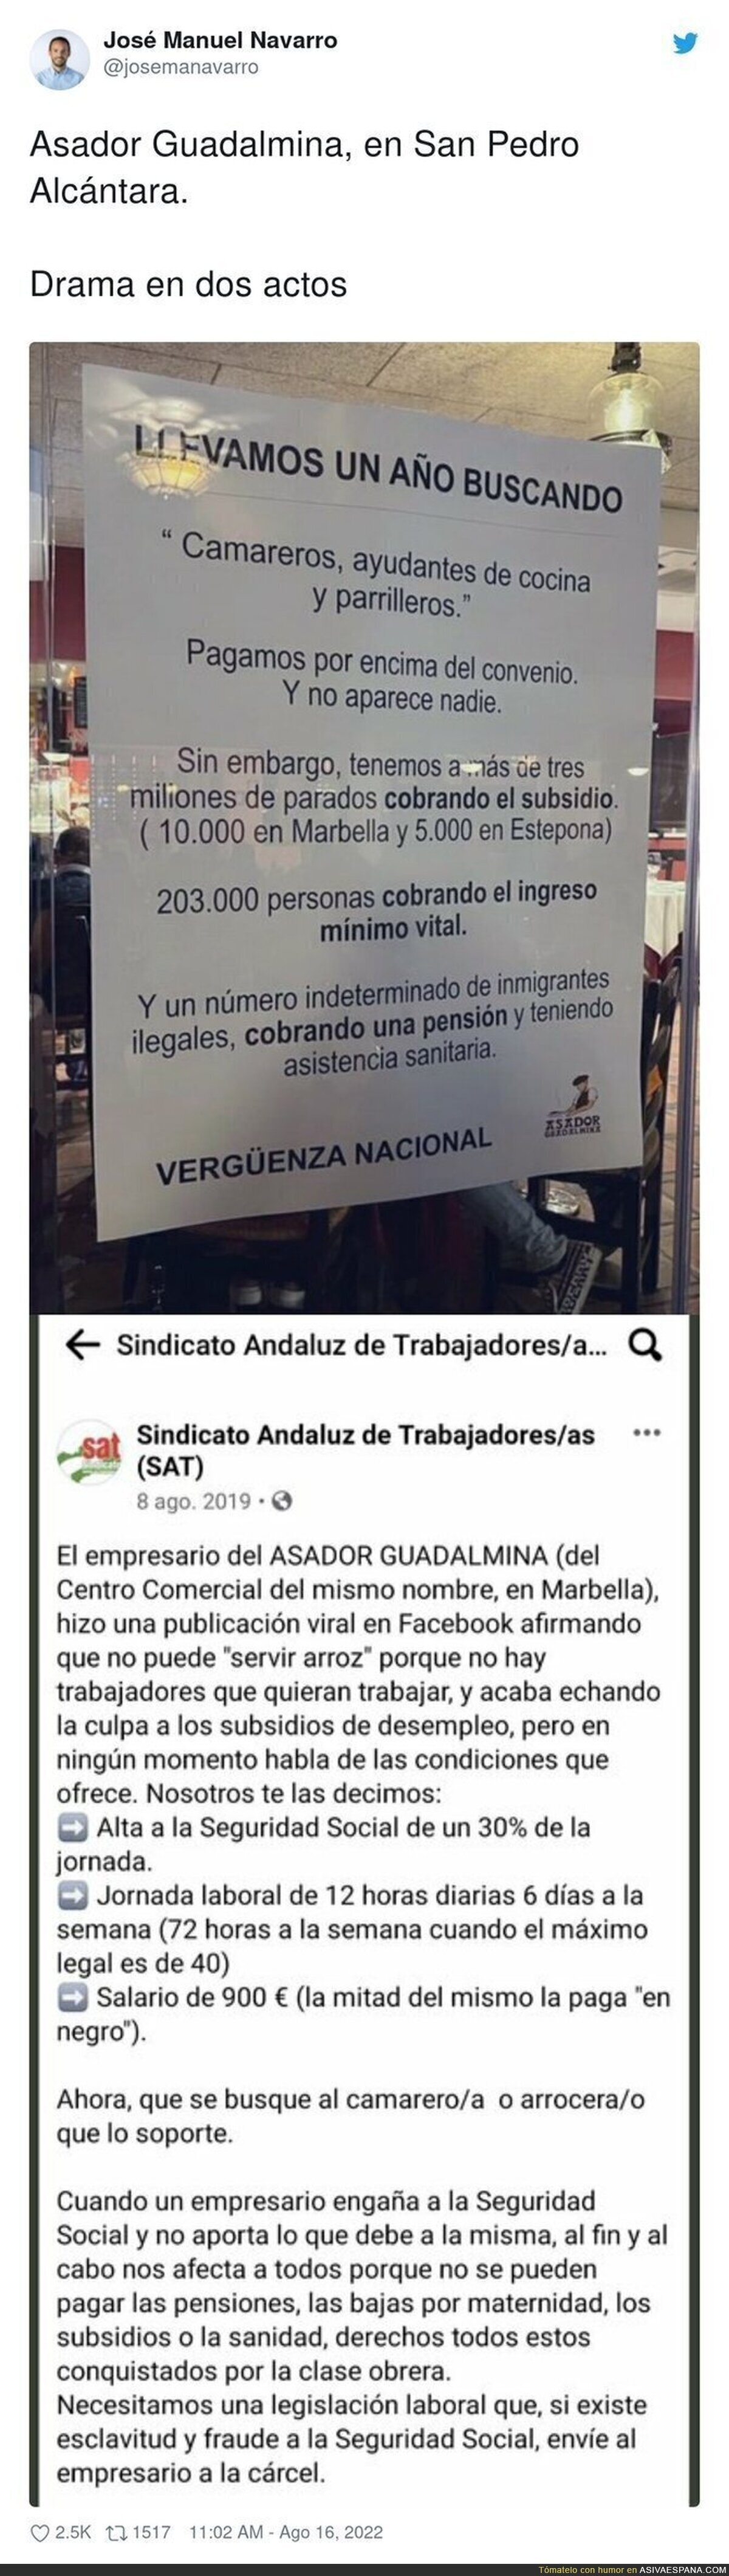 La brutal carta que le dedica el Sindicato Andaluz de Trabajadores al polémico Asador Guadalmina tras este lamentable cartel en su establecimiento